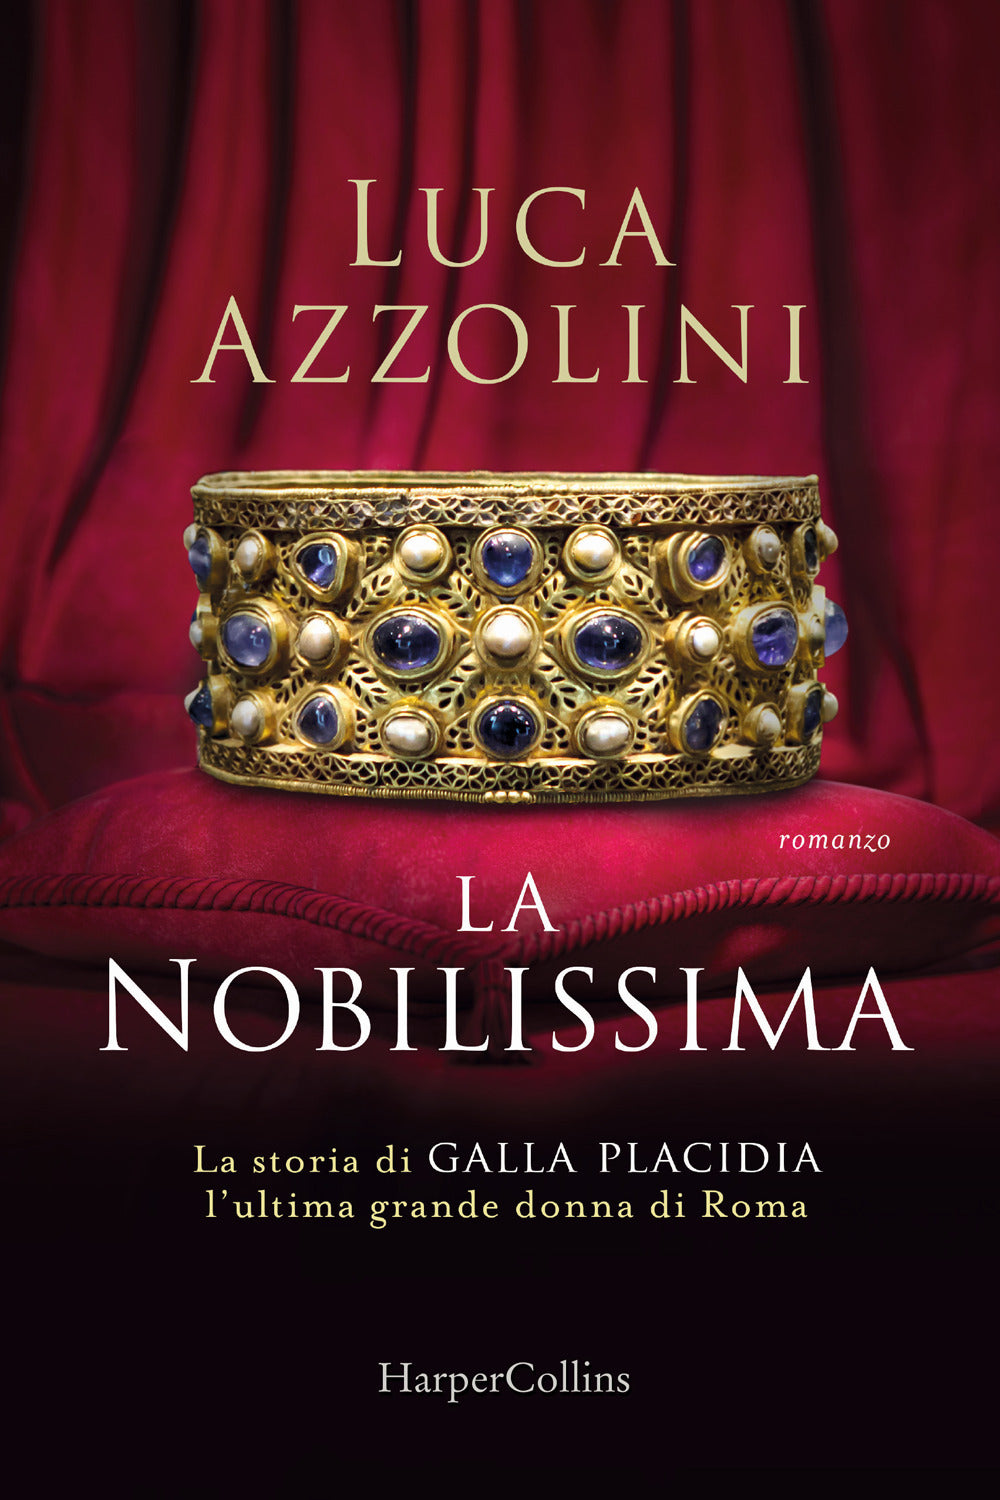 La Nobilissima. La storia di Galla Placidia, l'ultima grande donna di Roma.